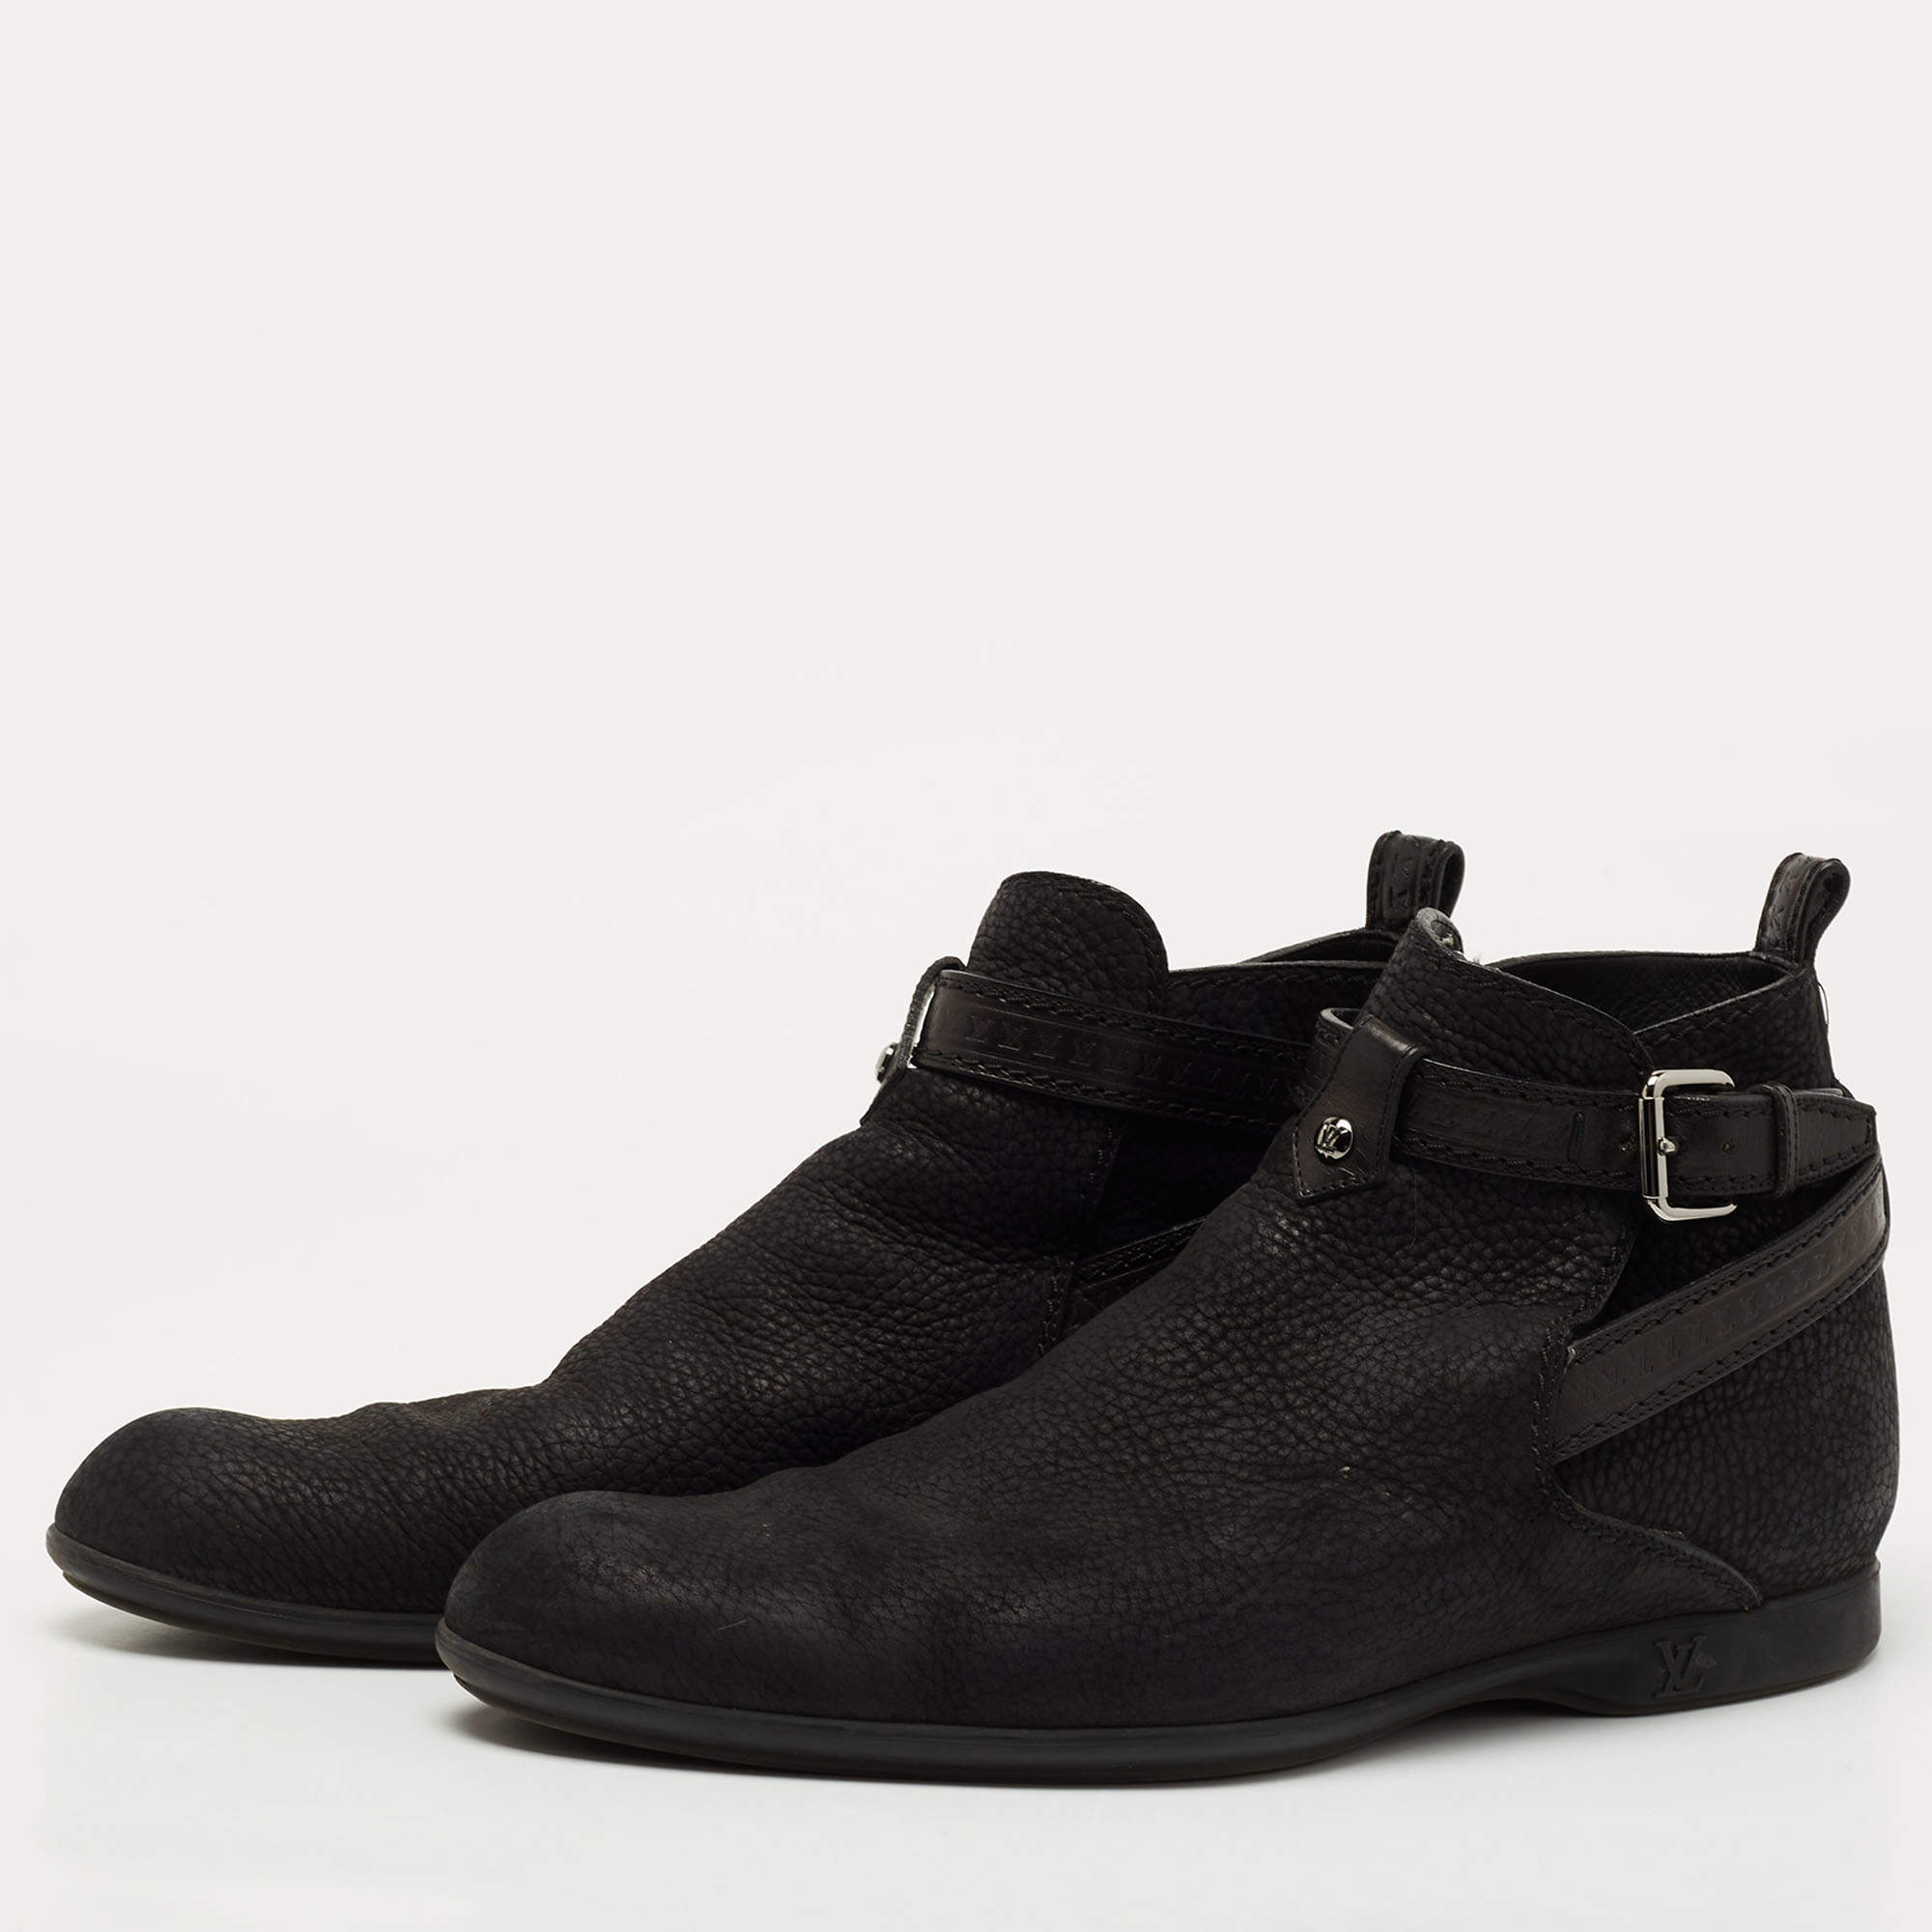 Louis Vuitton Men's Boots for Sale